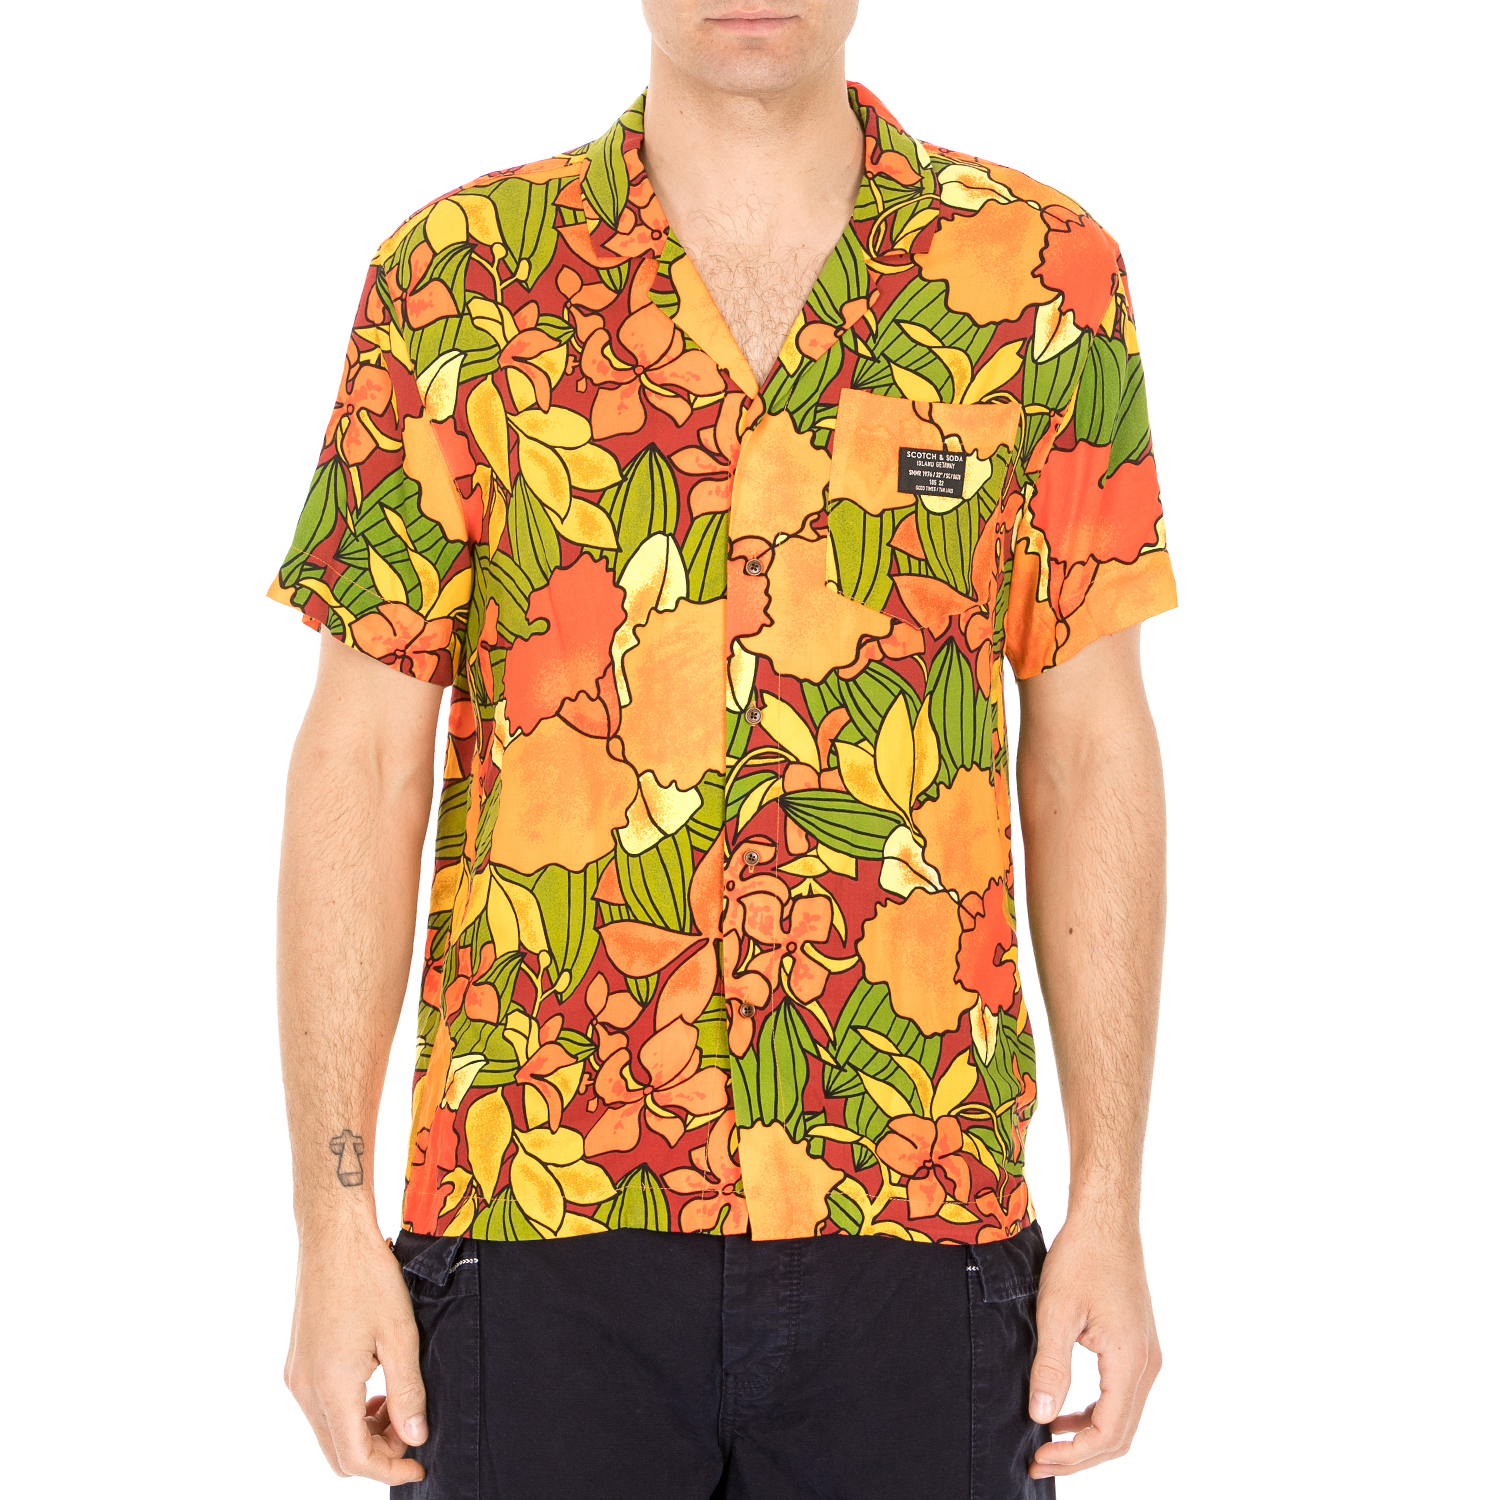 Ανδρικά/Ρούχα/Πουκάμισα/Κοντομάνικα-Αμάνικα SCOTCH & SODA - Ανδρικό πουκάμισο SCOTCH & SODA πορτοκαλί